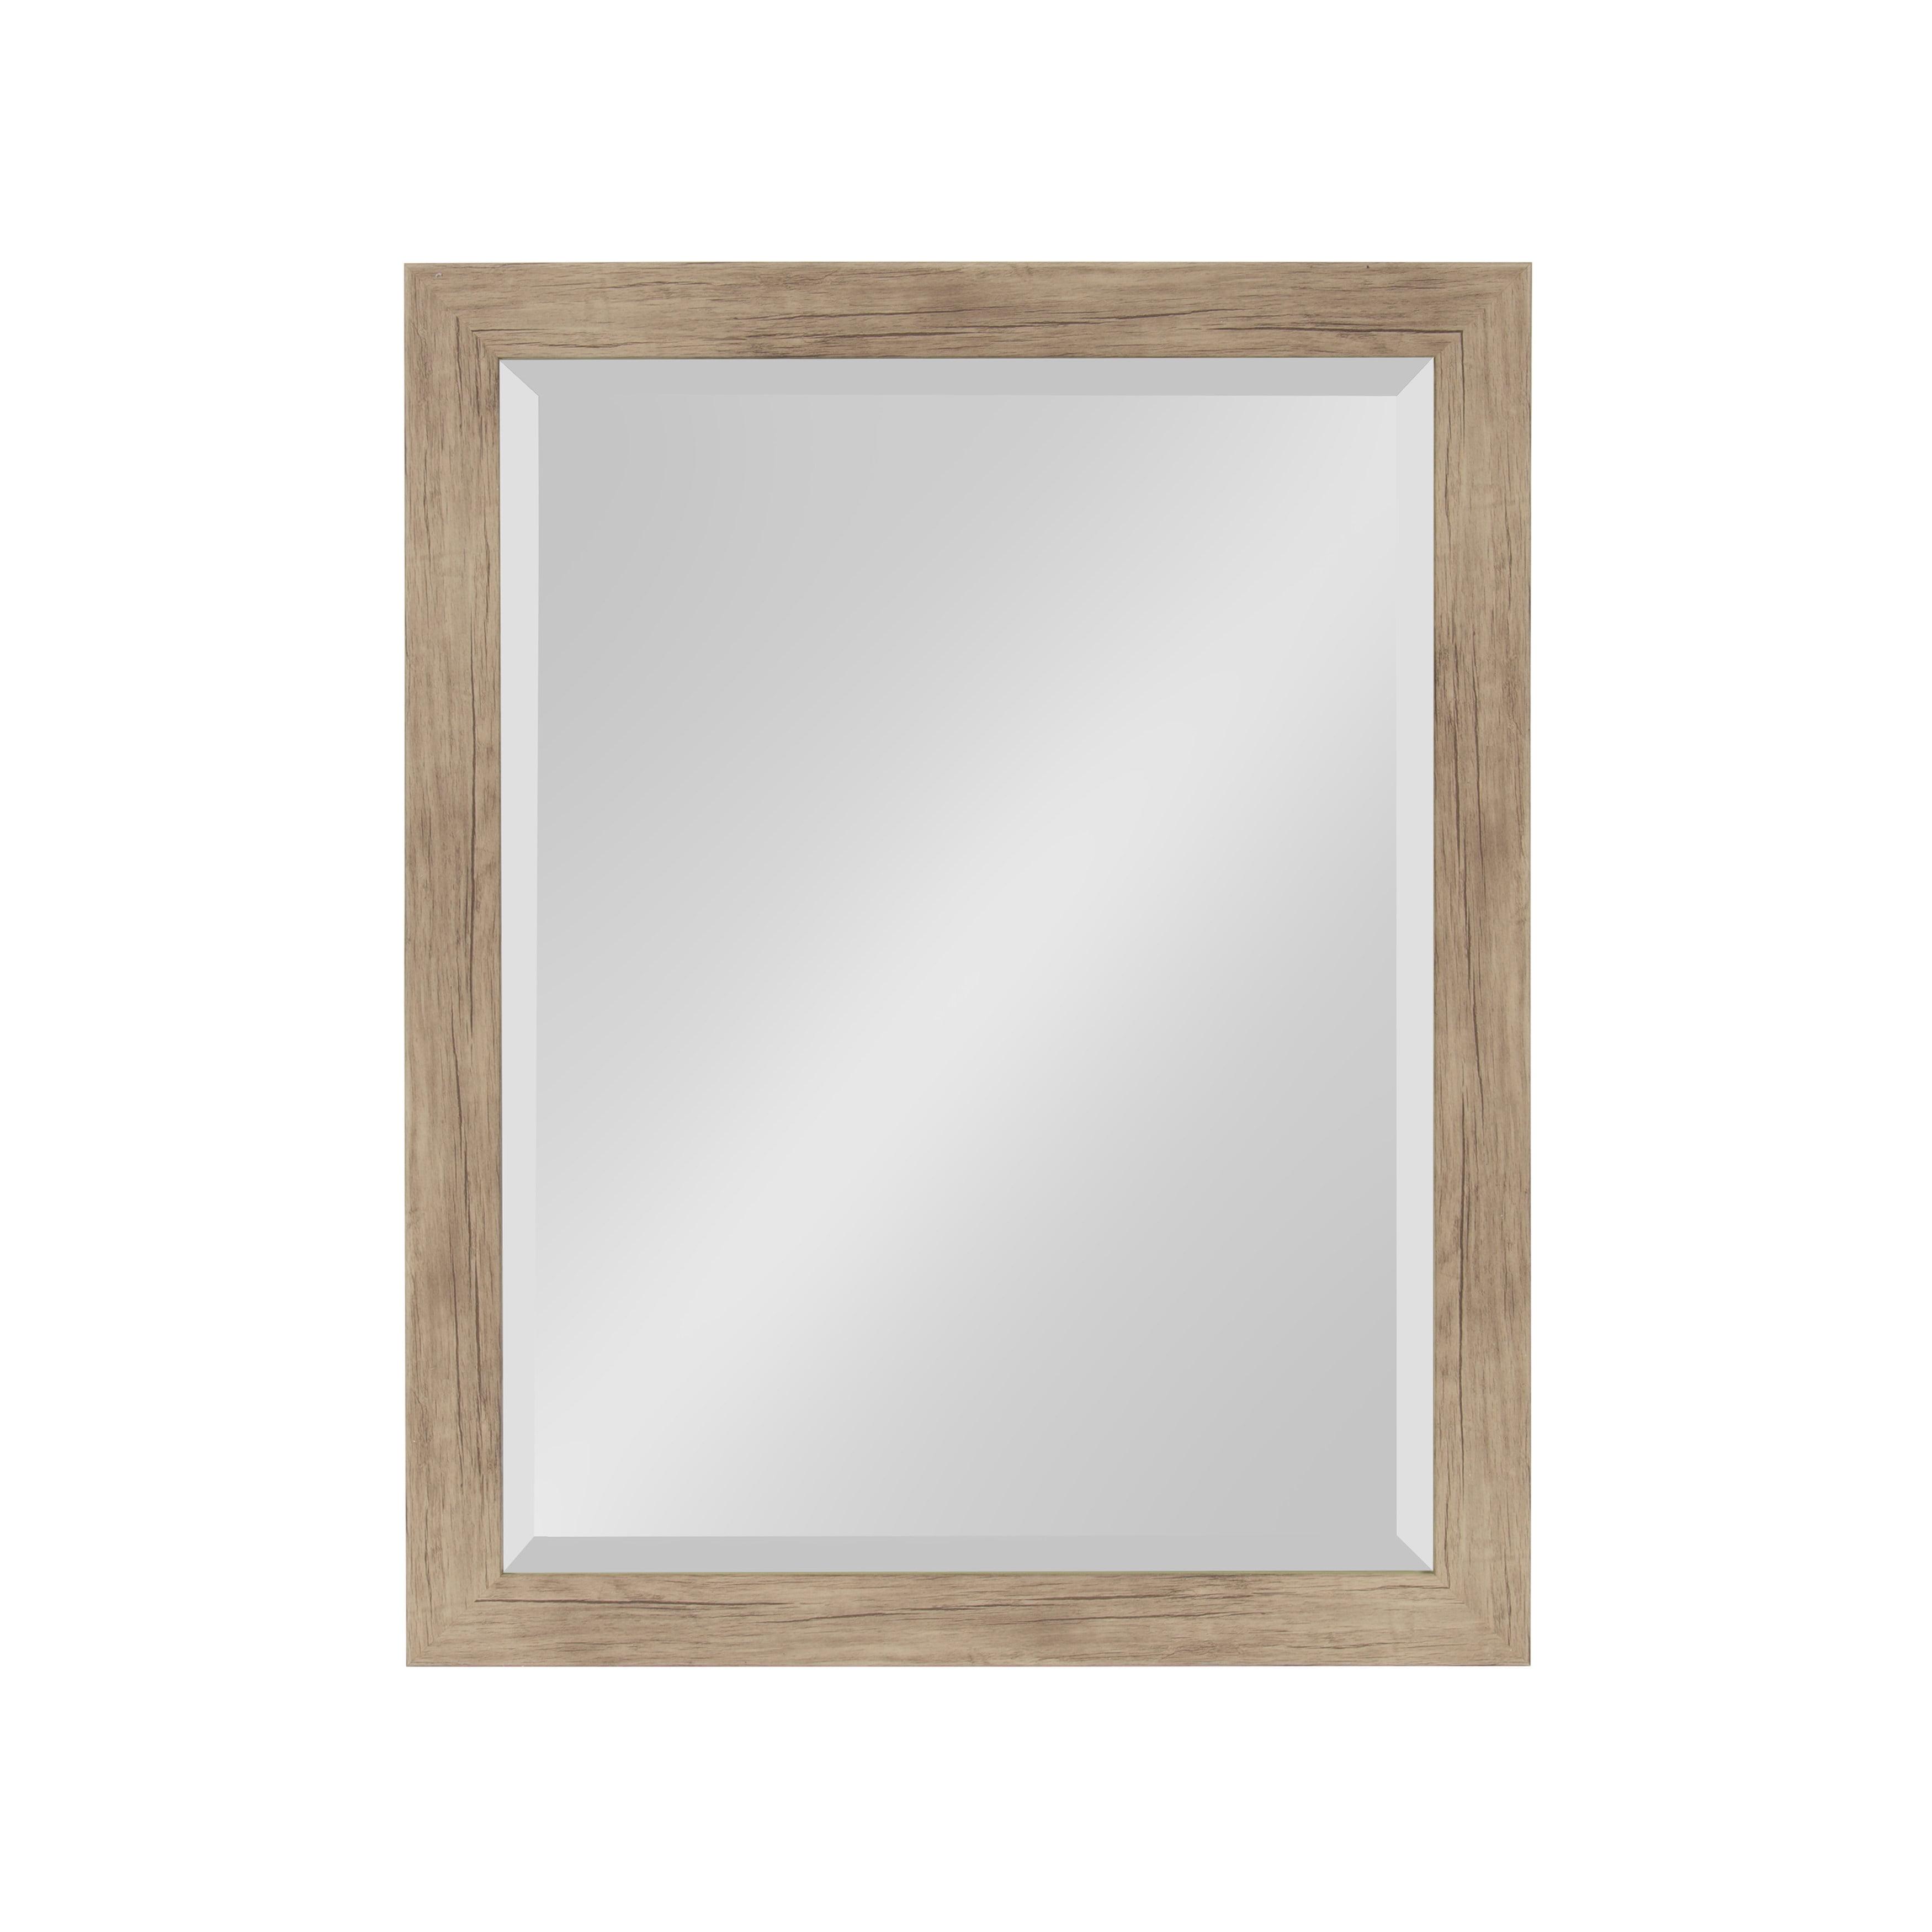 Rustic Brown Full-Length 21x27 Rectangular Wood Mirror